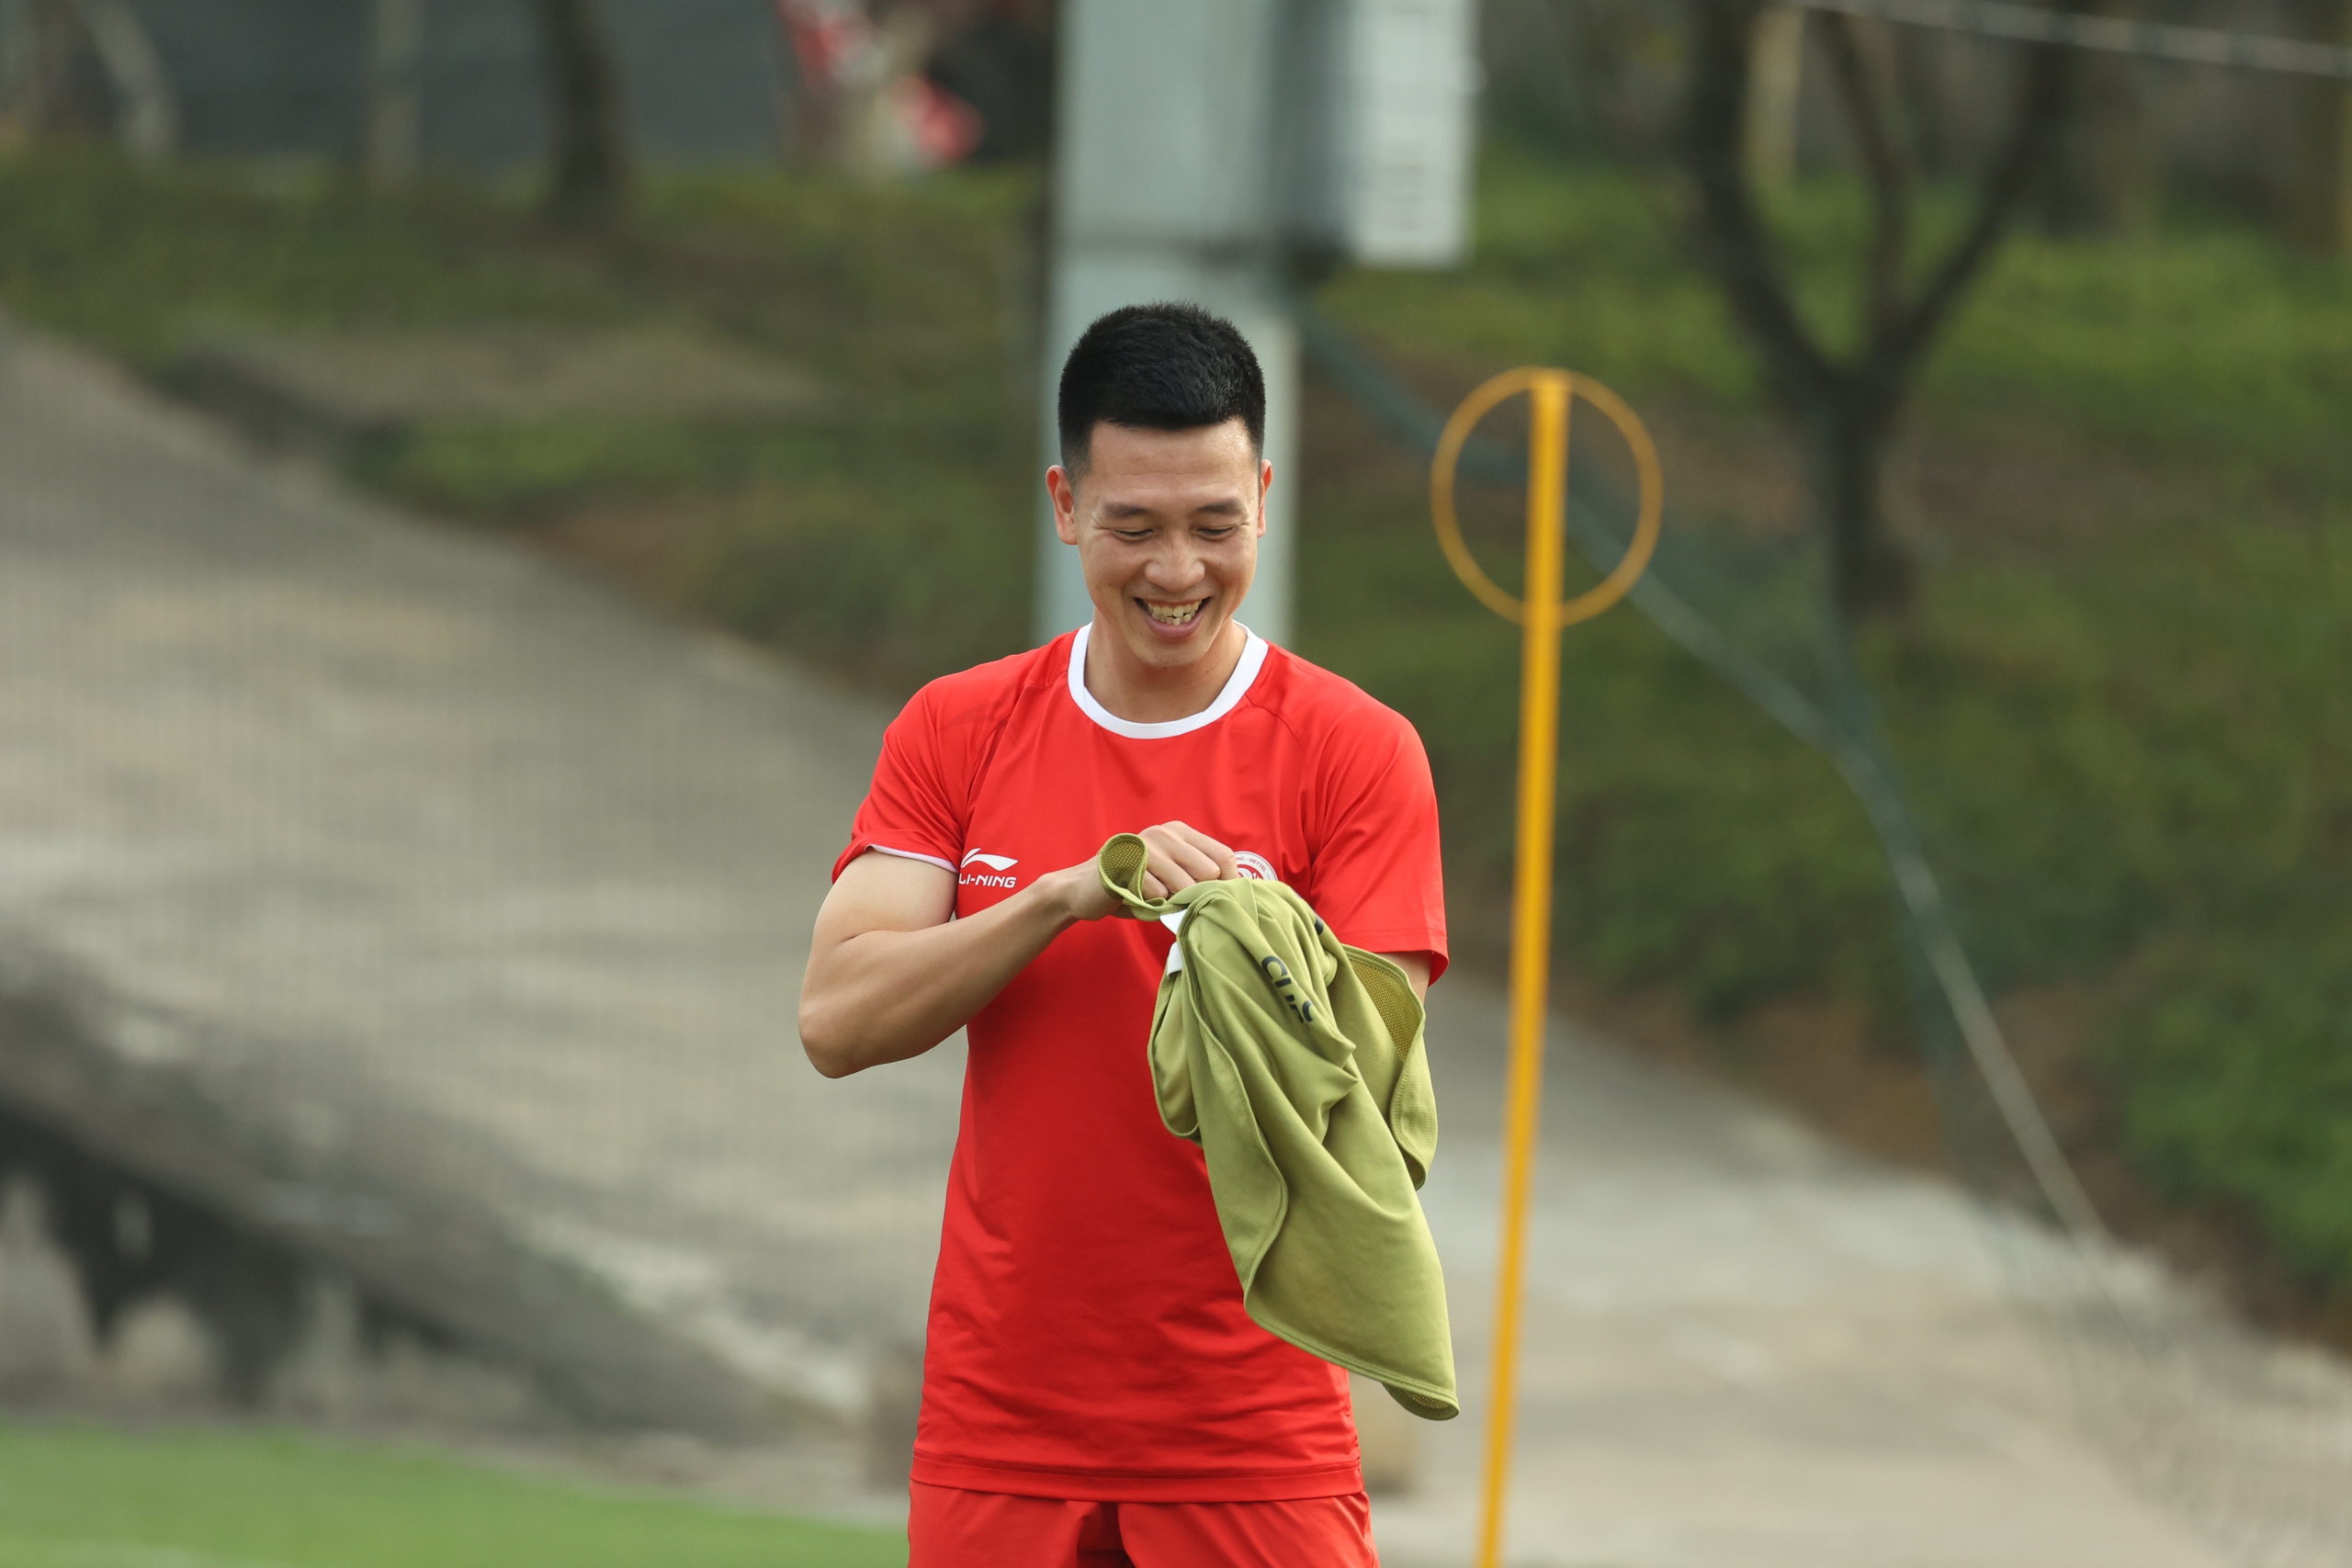 CLB Thể Công - Viettel tích cực tập luyện chuẩn bị đấu Khánh Hòa FC- Ảnh 3.